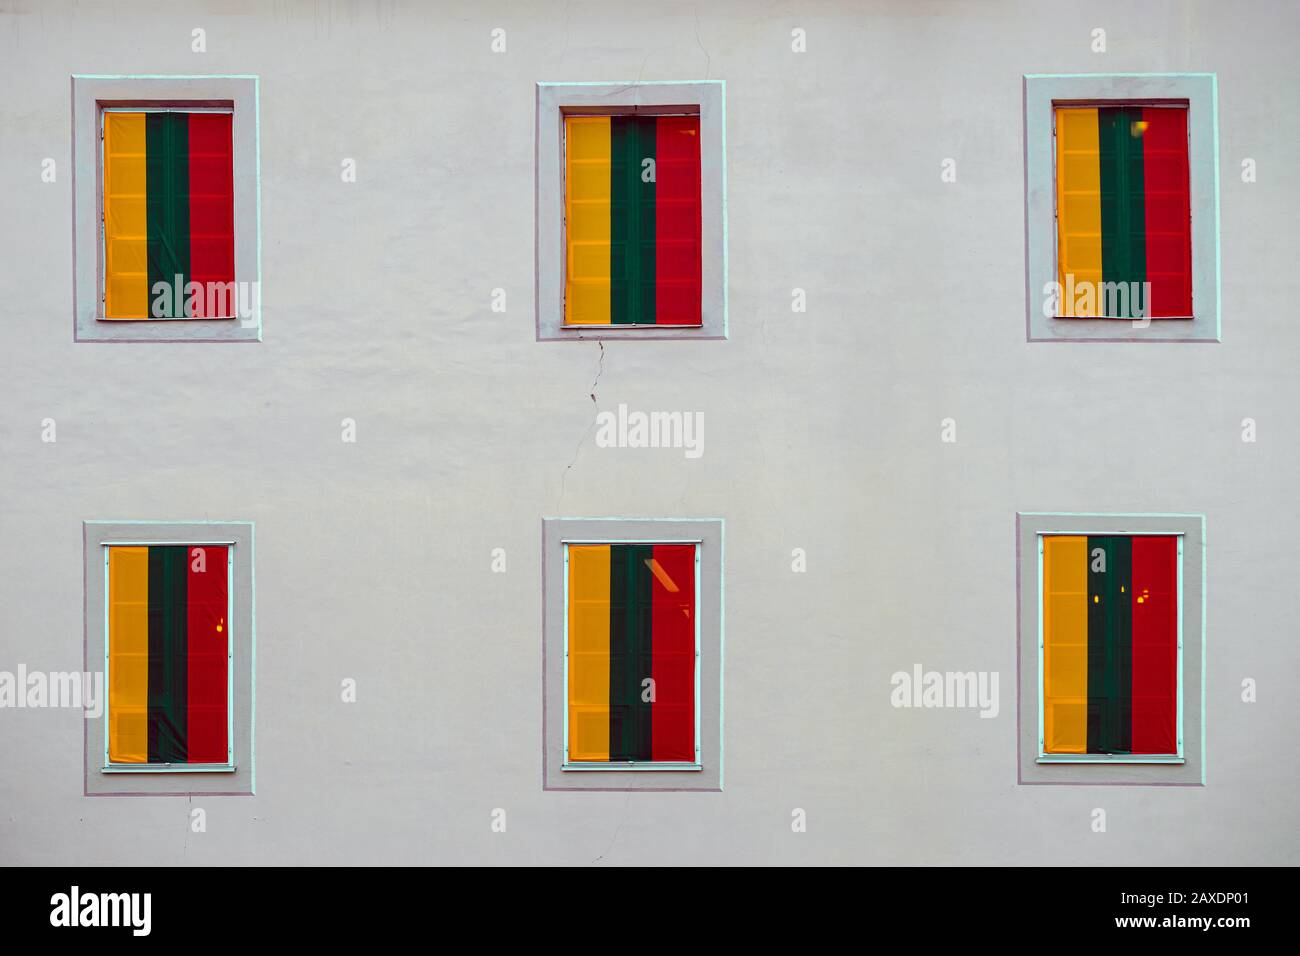 Decoración del edificio con motivo del día de la Independencia de Lituania, 16 de febrero, celebración. Las ventanas cubiertas con banderas lituanas - tri Foto de stock